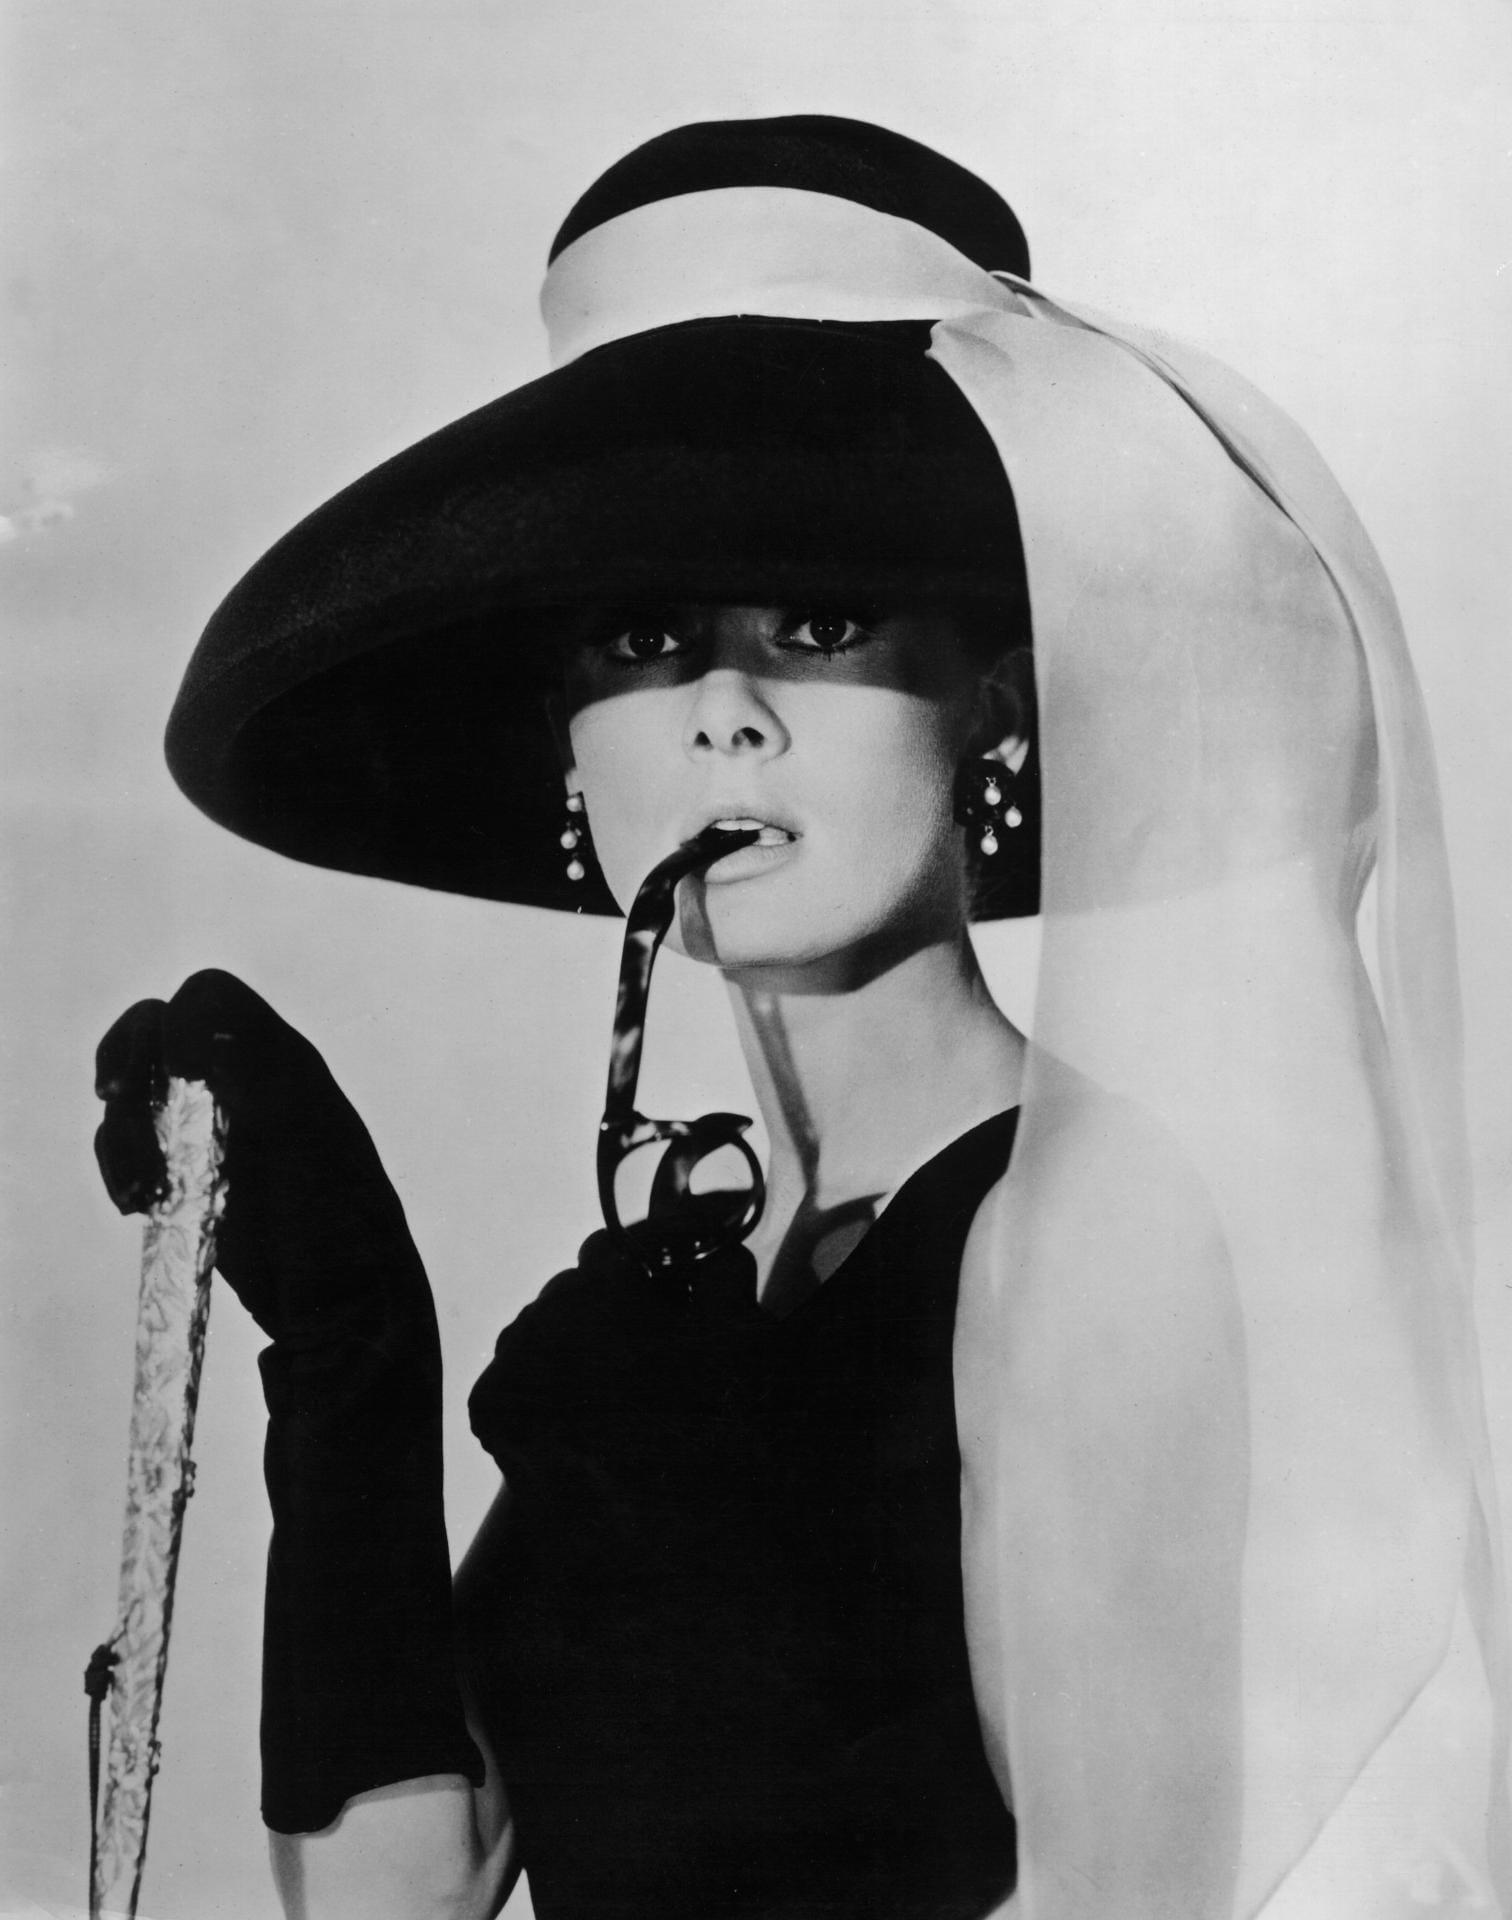 Beliebt bei den Briten sind auch berühmte Requisiten aus Filmen. Das legendäre Cocktail-Kleid von Audrey Hepburn aus dem Filmklassiker "Frühstück bei Tiffany's" wurde 2006 für mehr als 600 000 Euro versteigert.